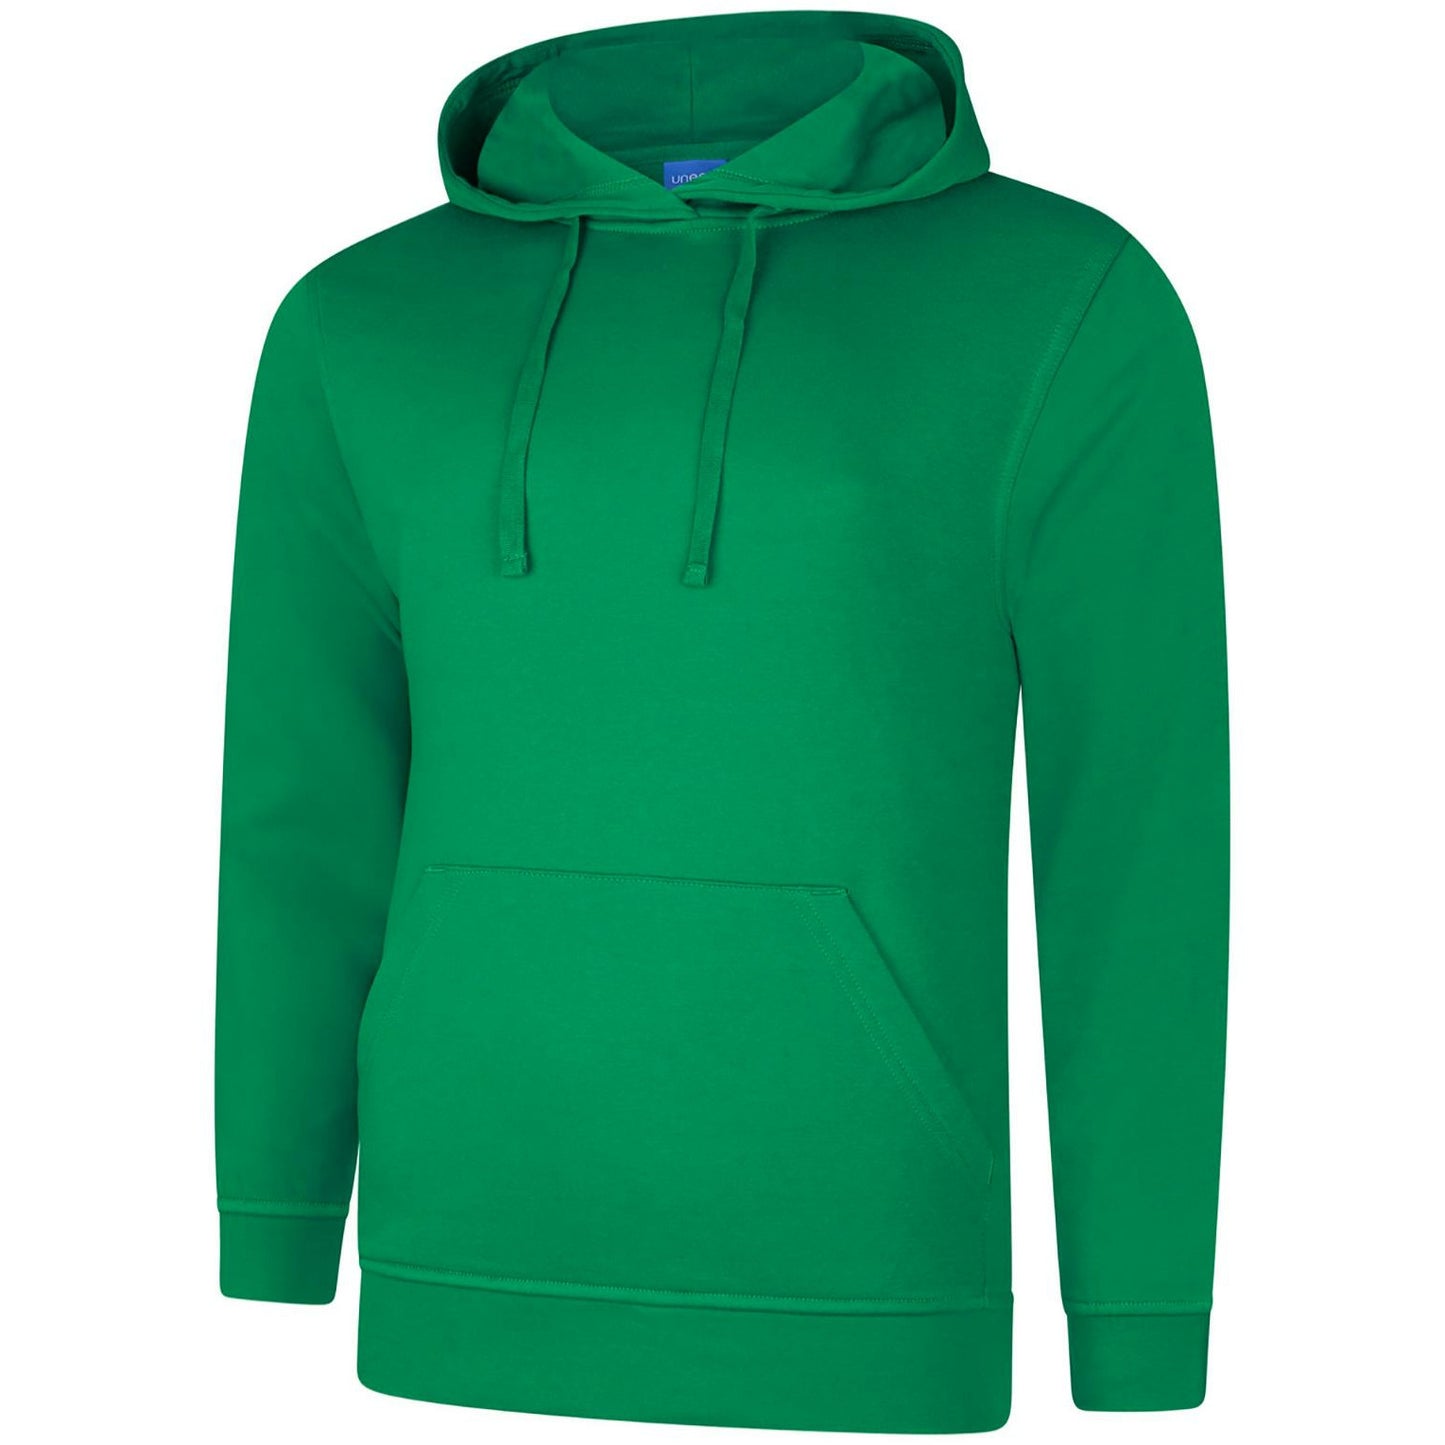 Deluxe Hooded Sweatshirt (L - 2XL) Kelly Green